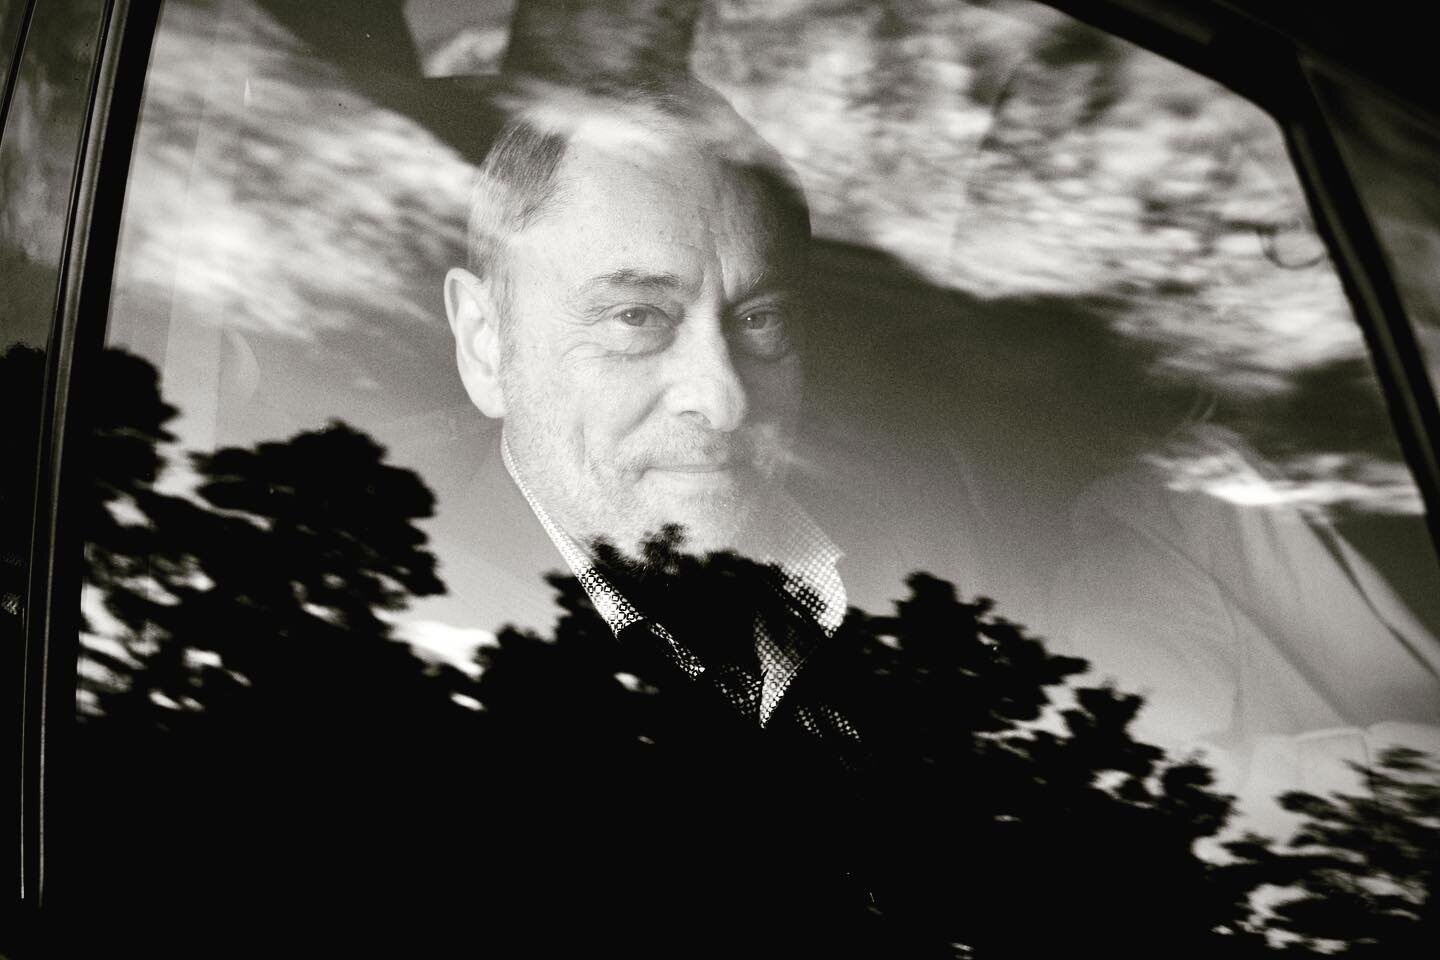 Stephane in the car.
Nesodden, september 2022 

.
.
.
.
#family #portrait #bw #fujifilm #xt30